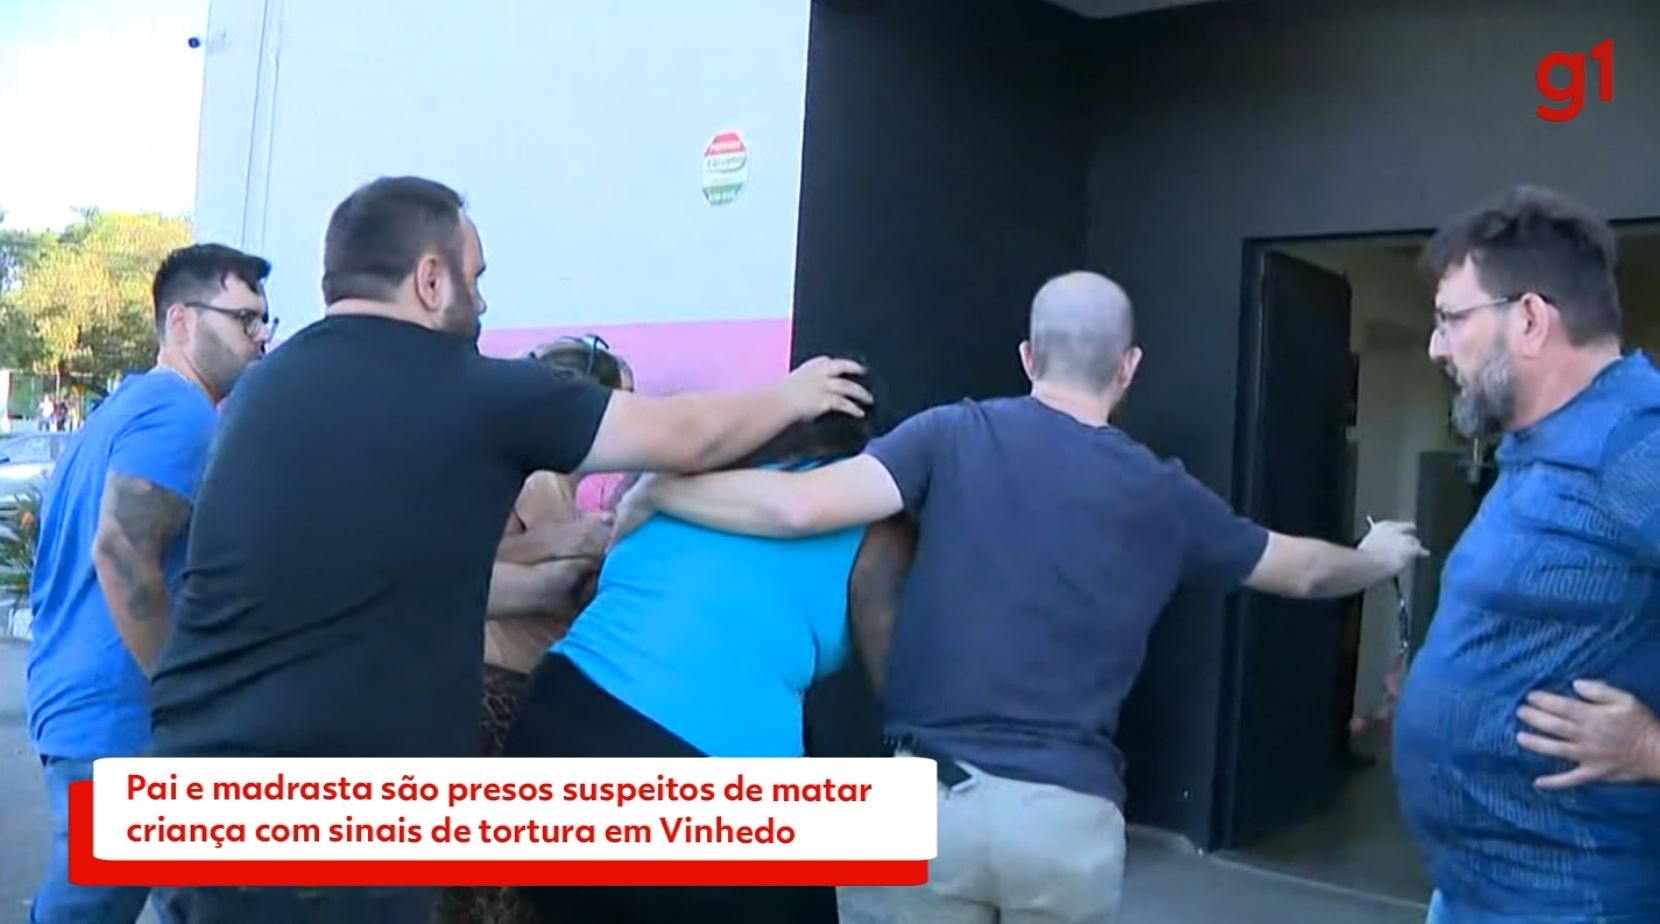 Pai e madrasta são presos suspeitos de matar criança com sinais de tortura em Vinhedo